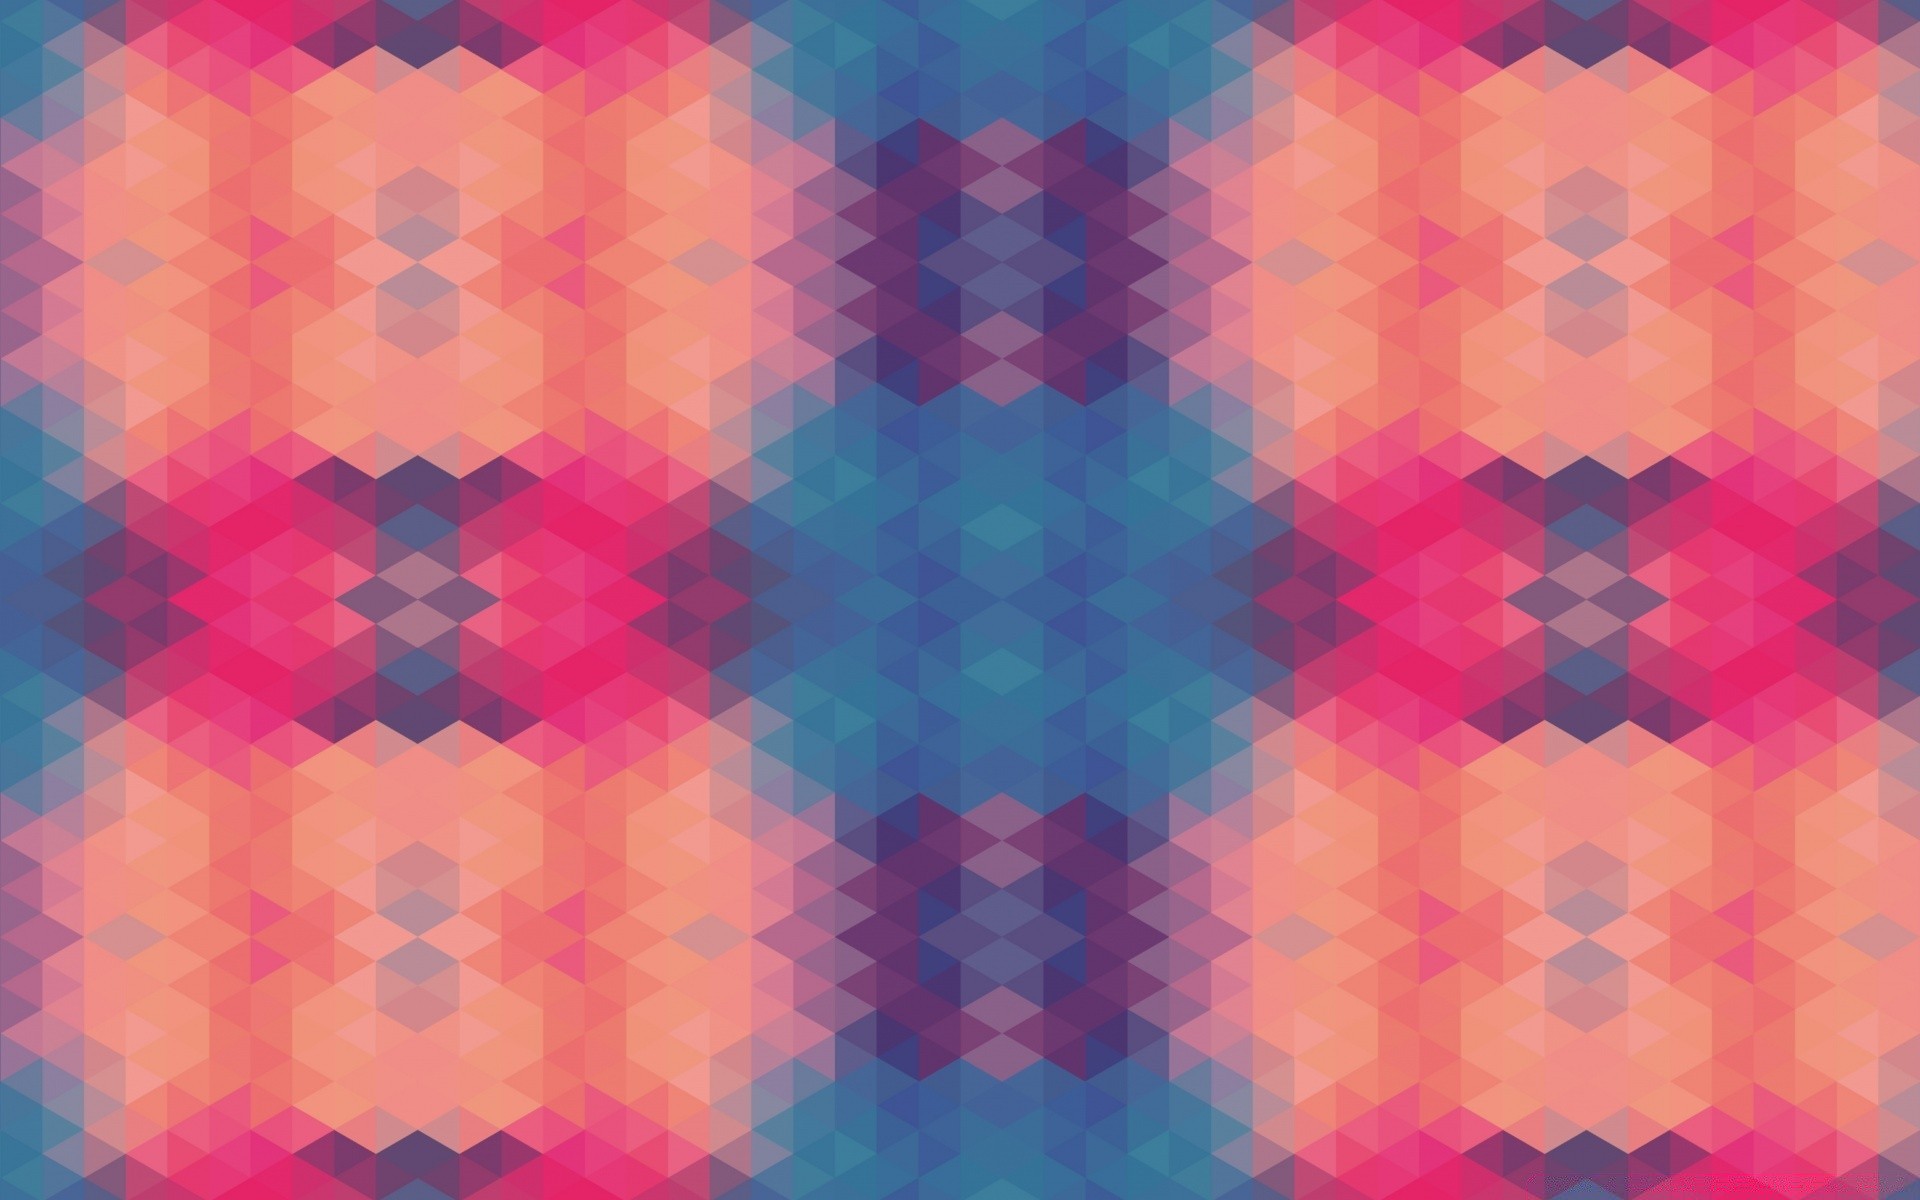 векторная графика шаблон геометрические текстура аннотация обои украшения дизайн иллюстрация искусство мозаика график фон формы художественный плитка повторение треугольник элемент бесшовные текстиль